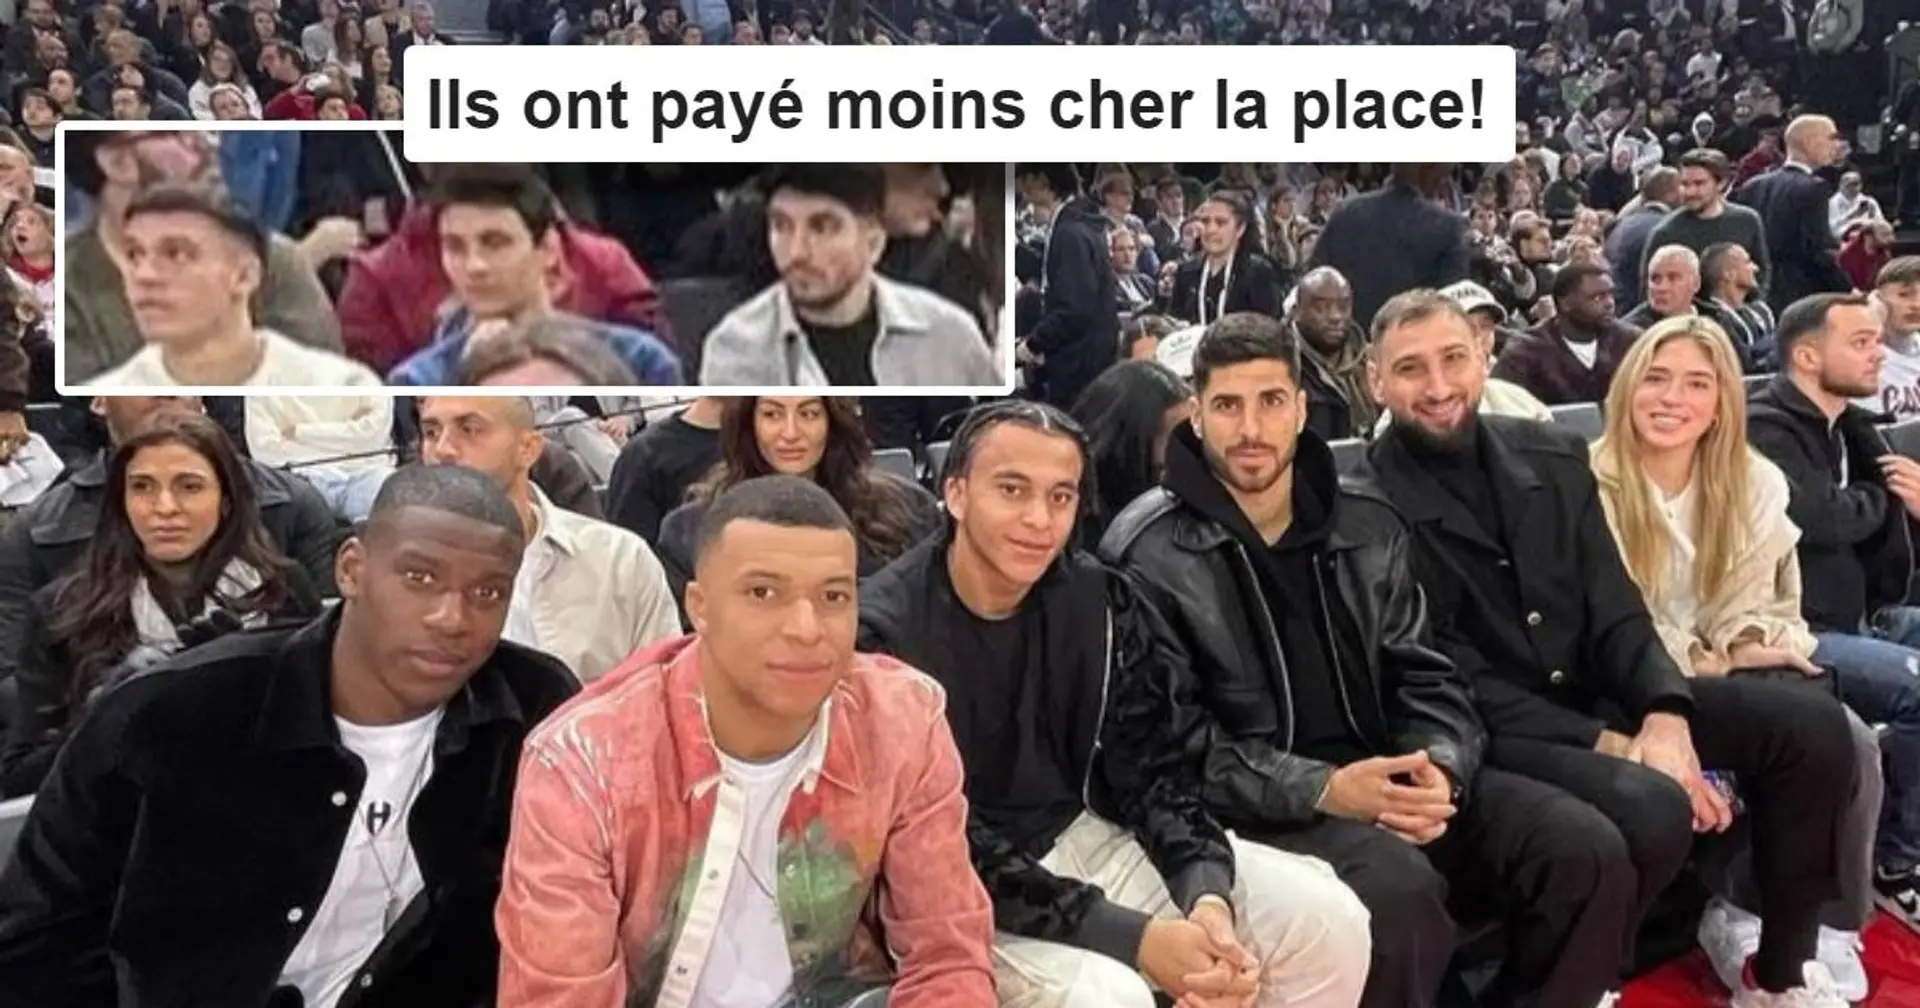 "Ils sont punis les pauvres" : Une photo des joueurs du PSG présents au NBA Paris fait réagir les fans